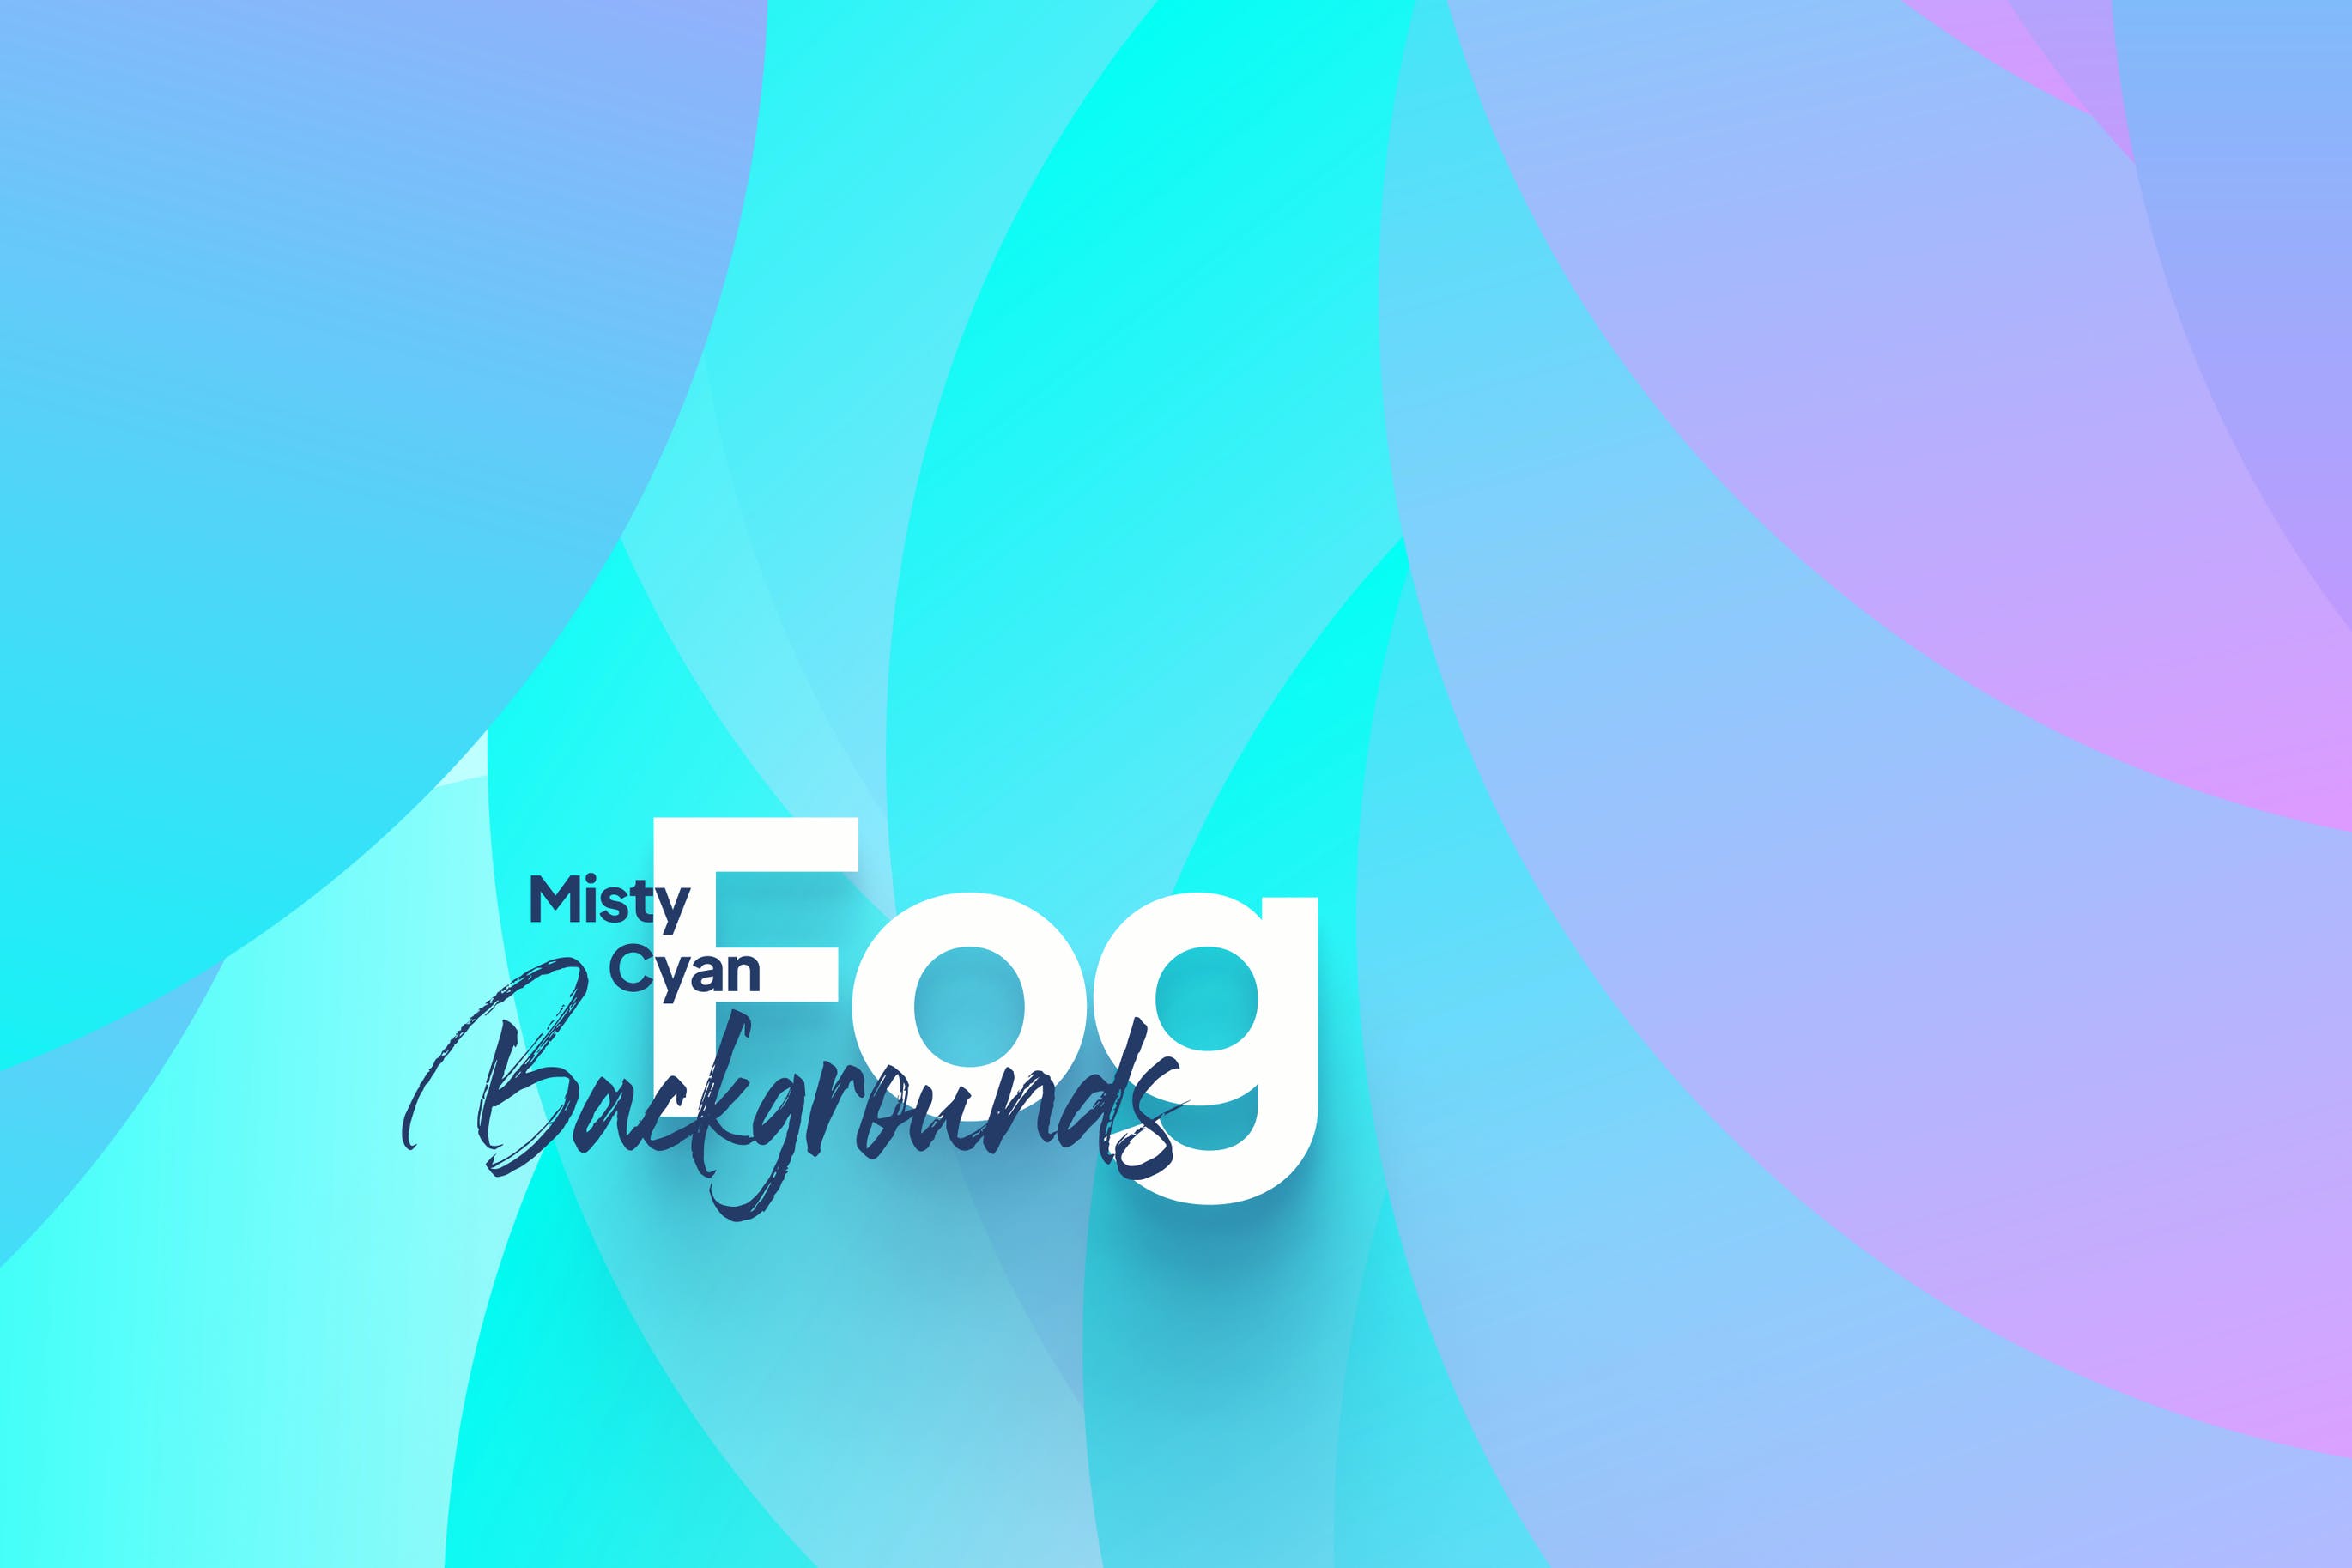 朦胧青色背景素材 Misty Cyan Fog Background Pack APP UI 第1张